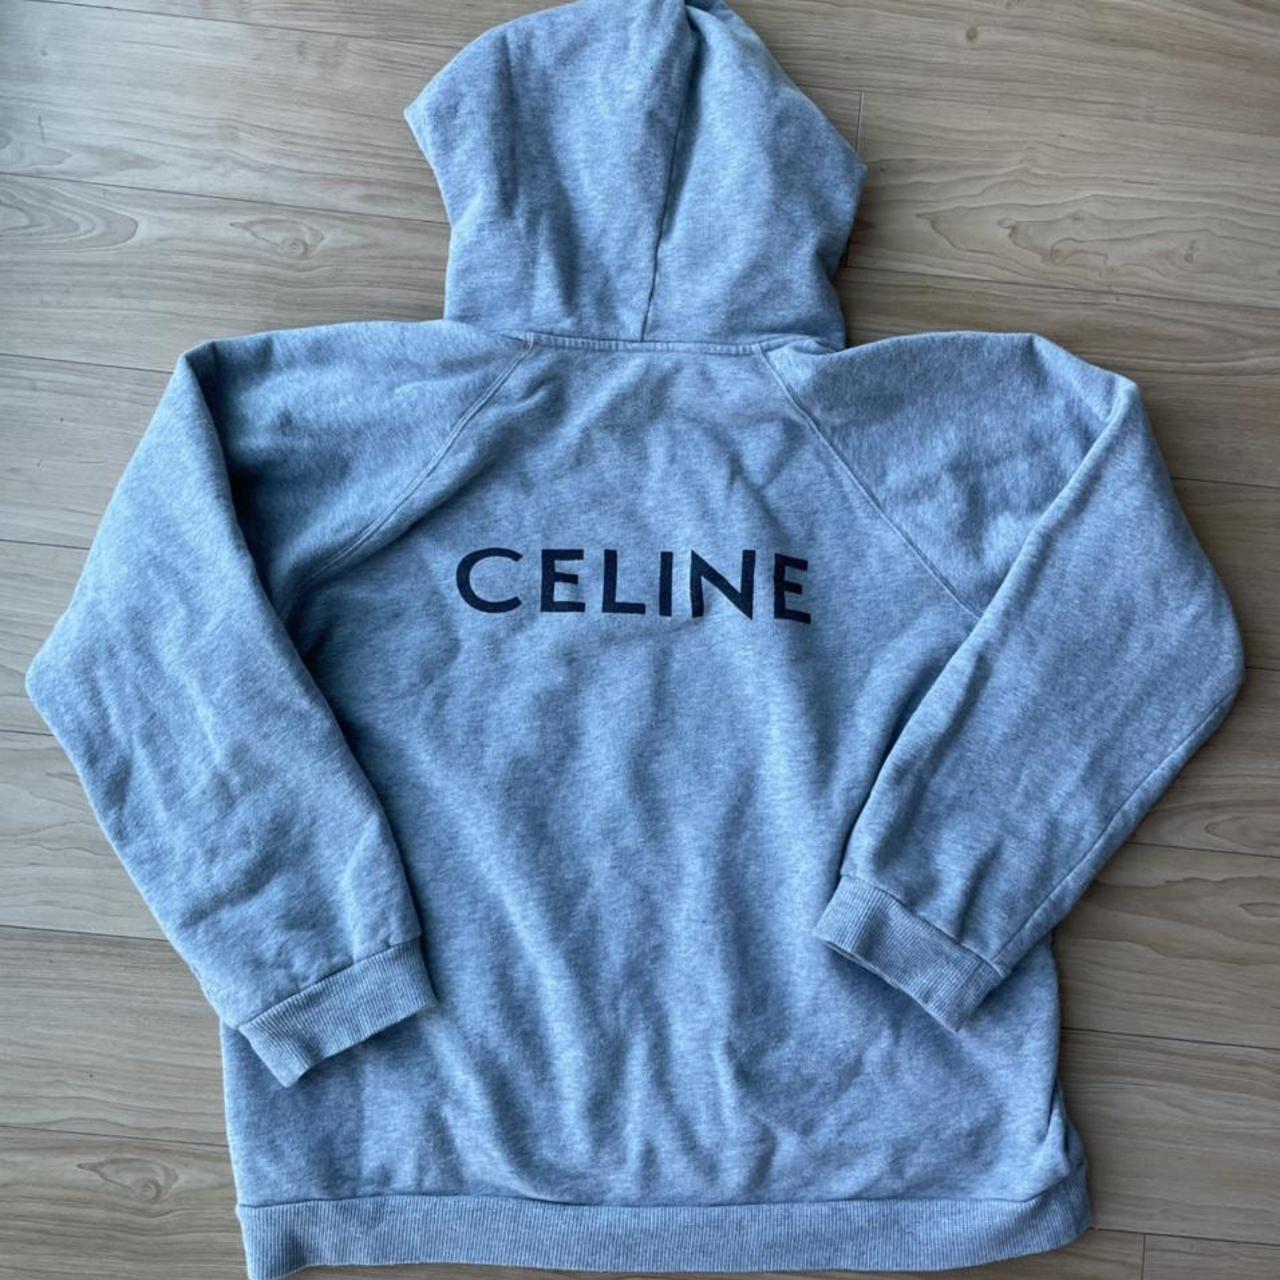 Celine hoodie - Depop